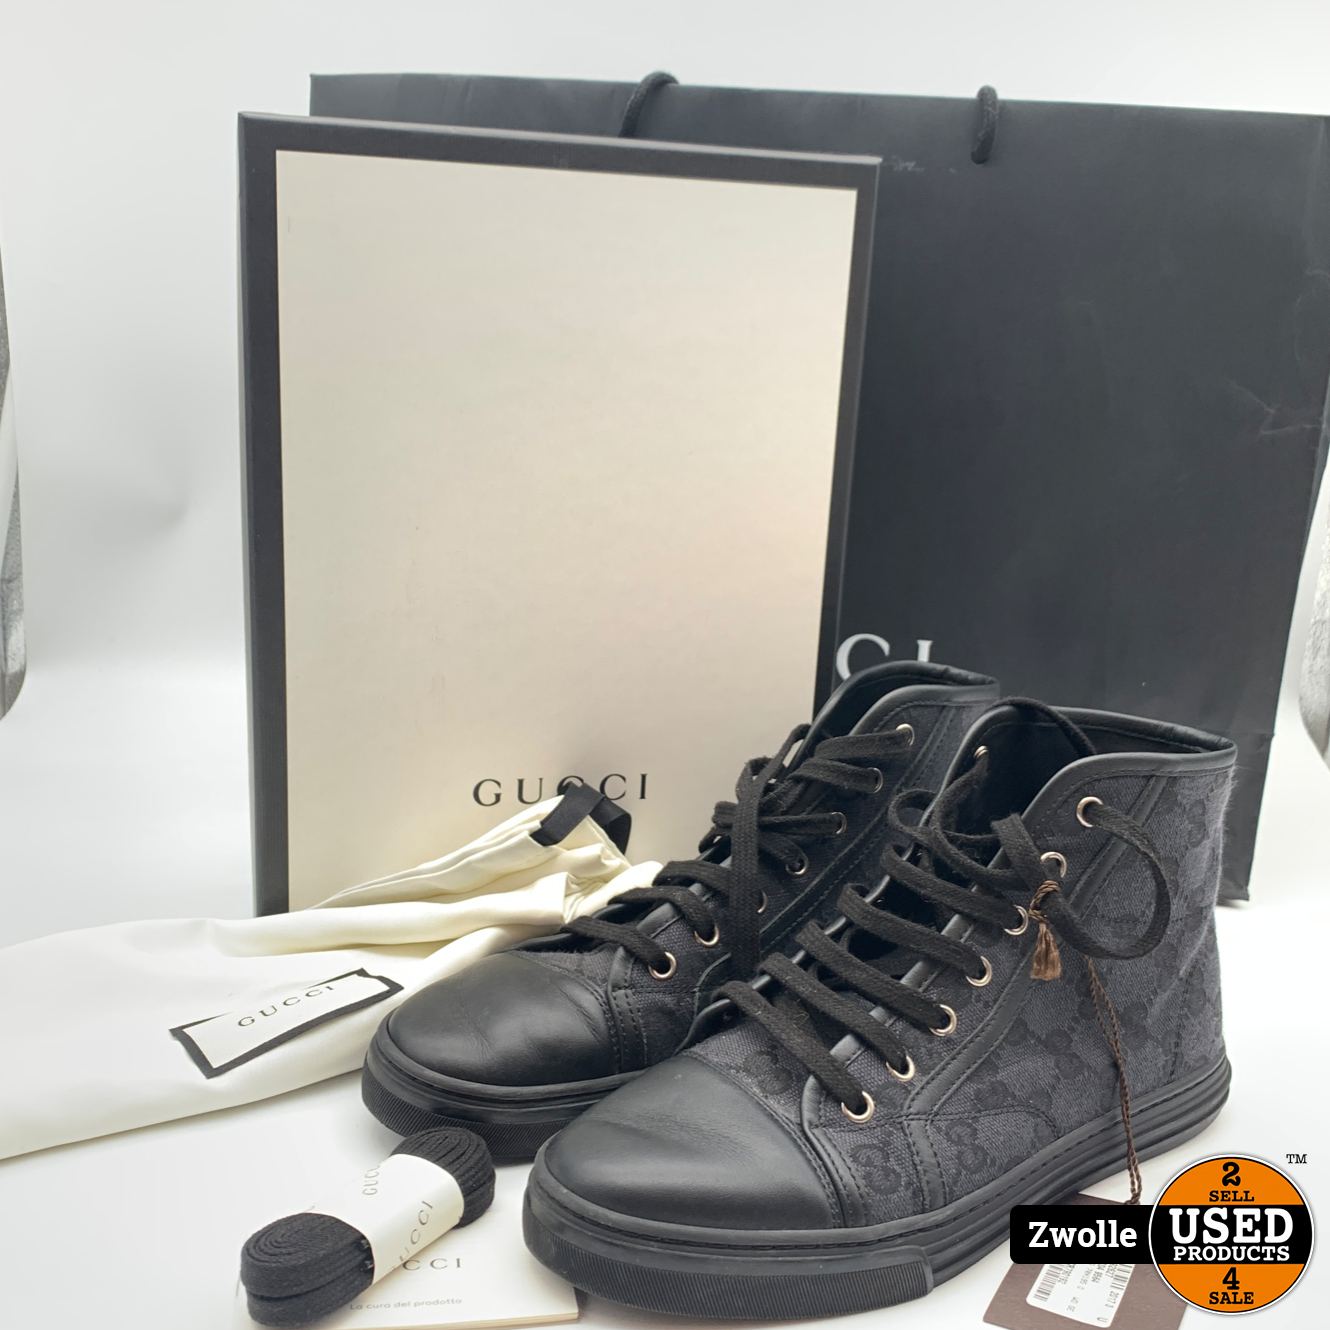 Gucci schoenen compleet in doos maat - Used Zwolle